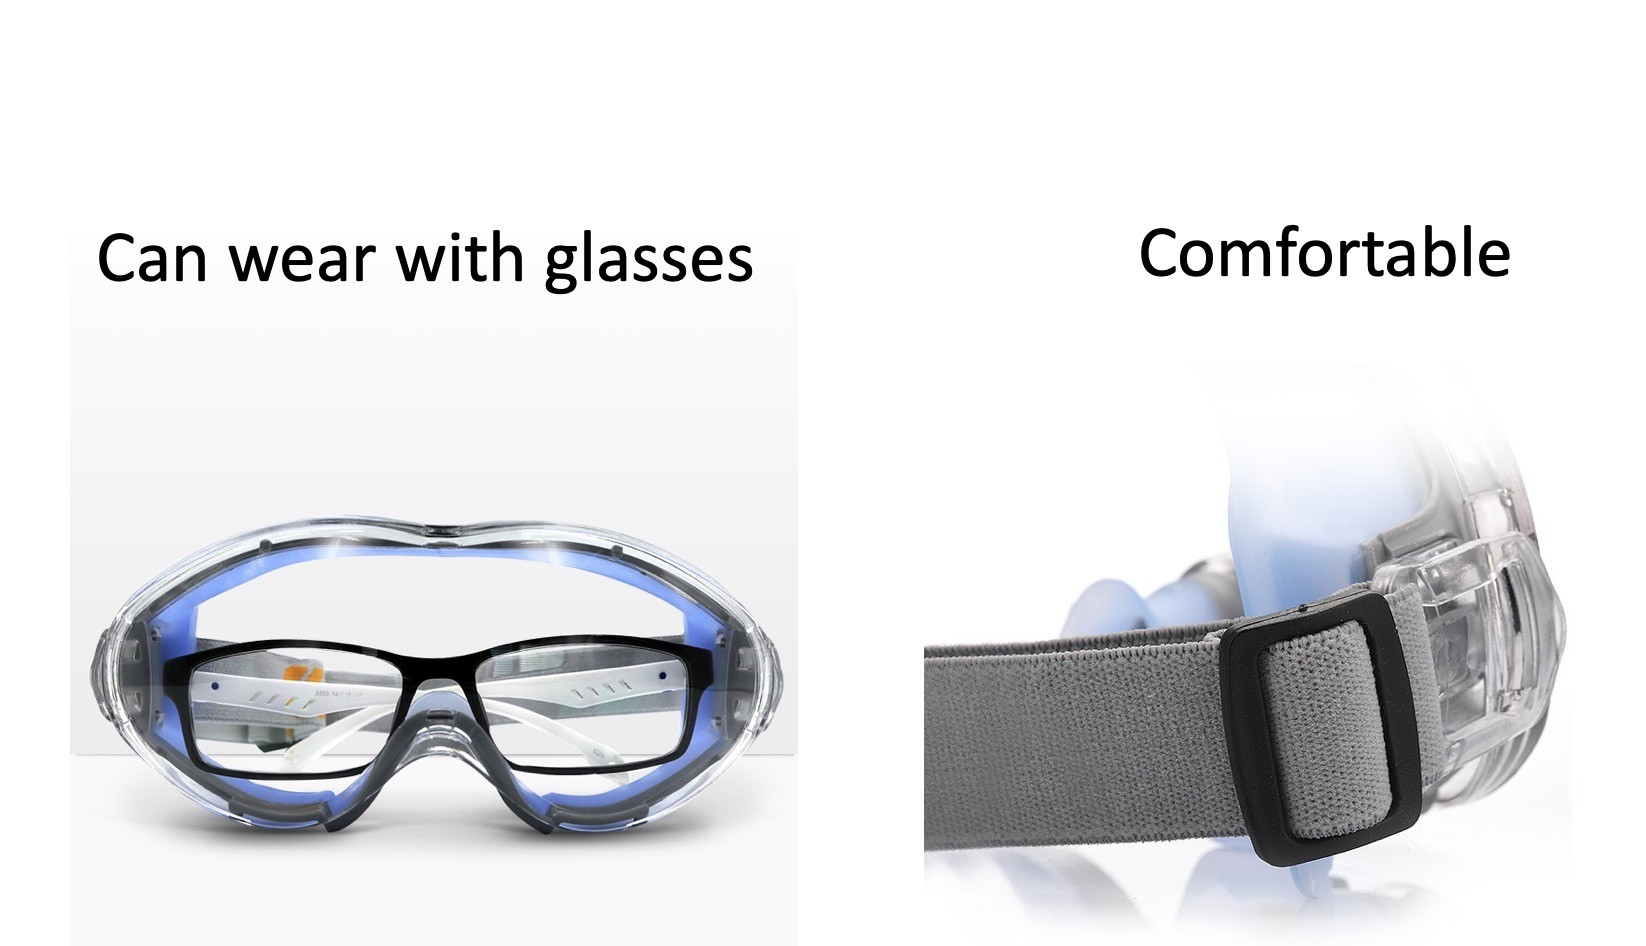 美國熱銷產品 護目鏡 眼罩 長戴式 久戴也舒適 坐飛機的必備夥伴 有效保護眼睛 密合度高